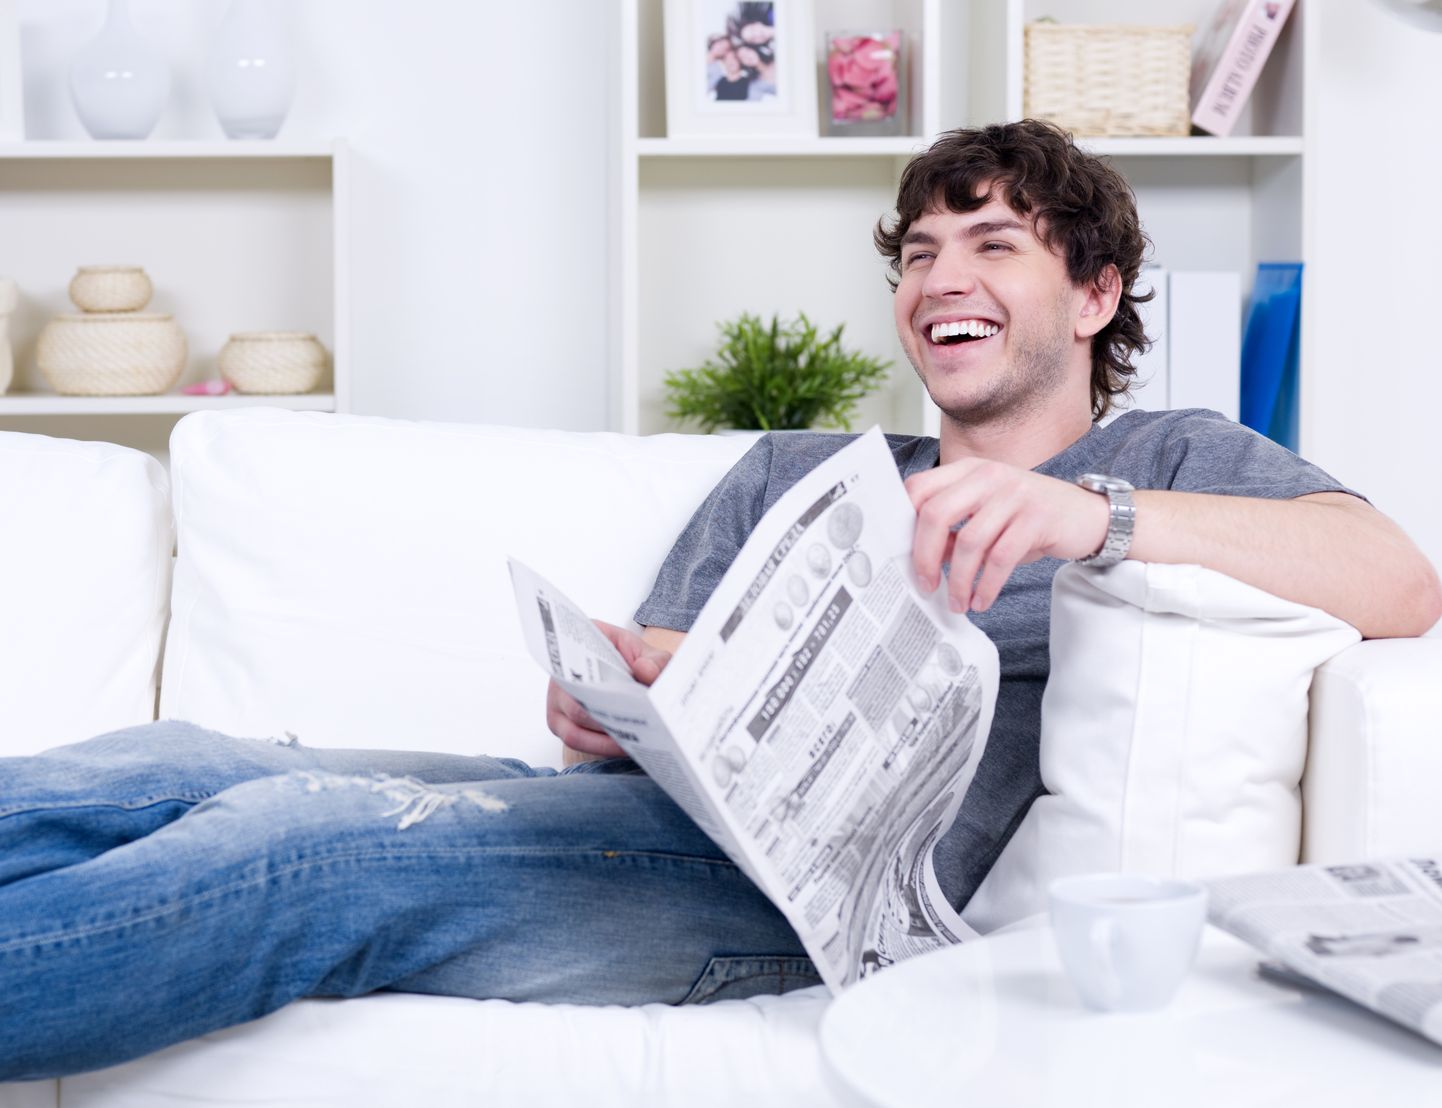 Mees lugemas väljaannet ja naermas. Pilt on illustreeriv